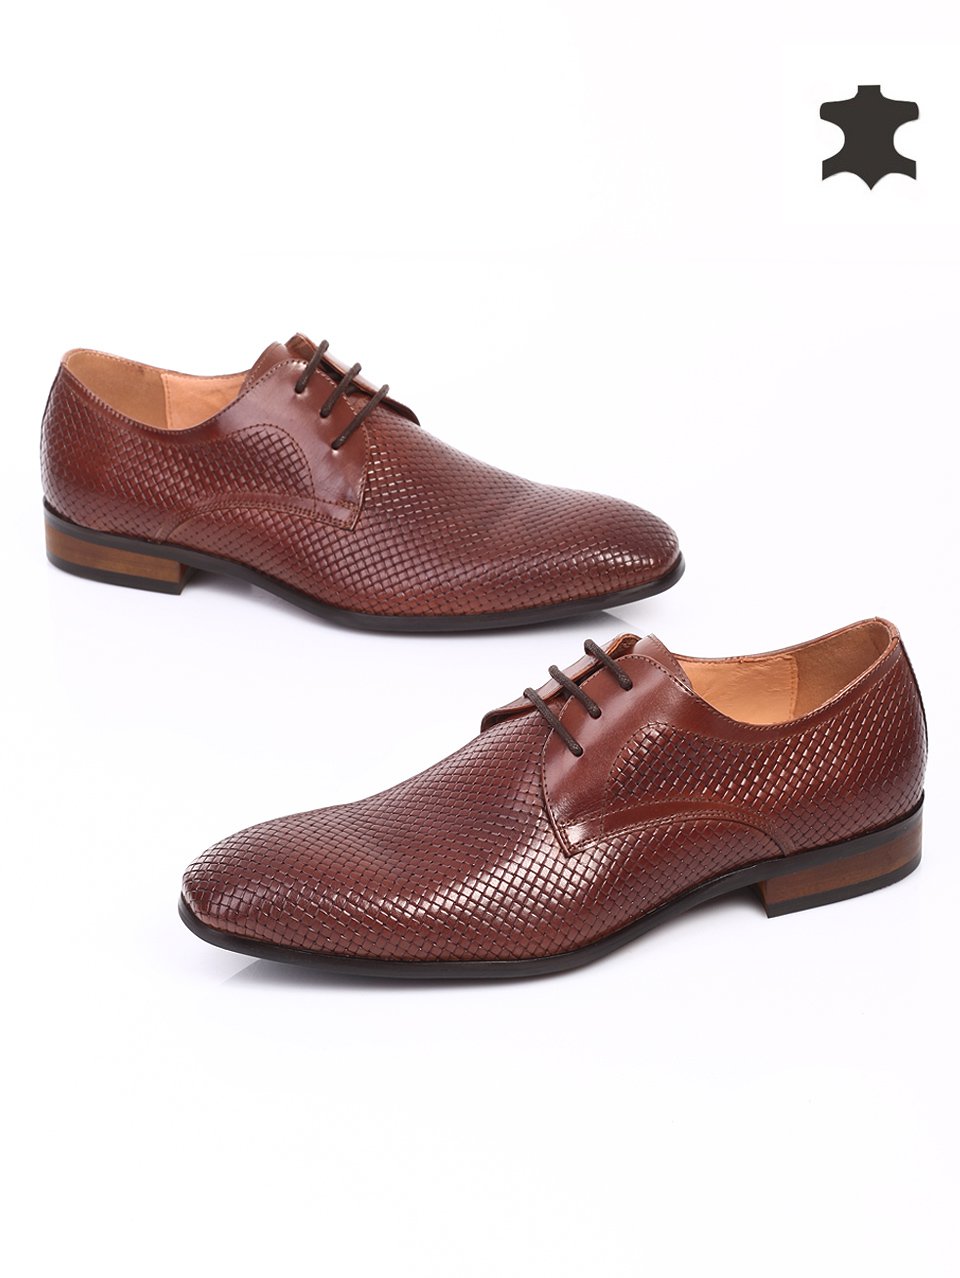 Елегантни мъжки обувки от естествена кожа 7N-15219 brown